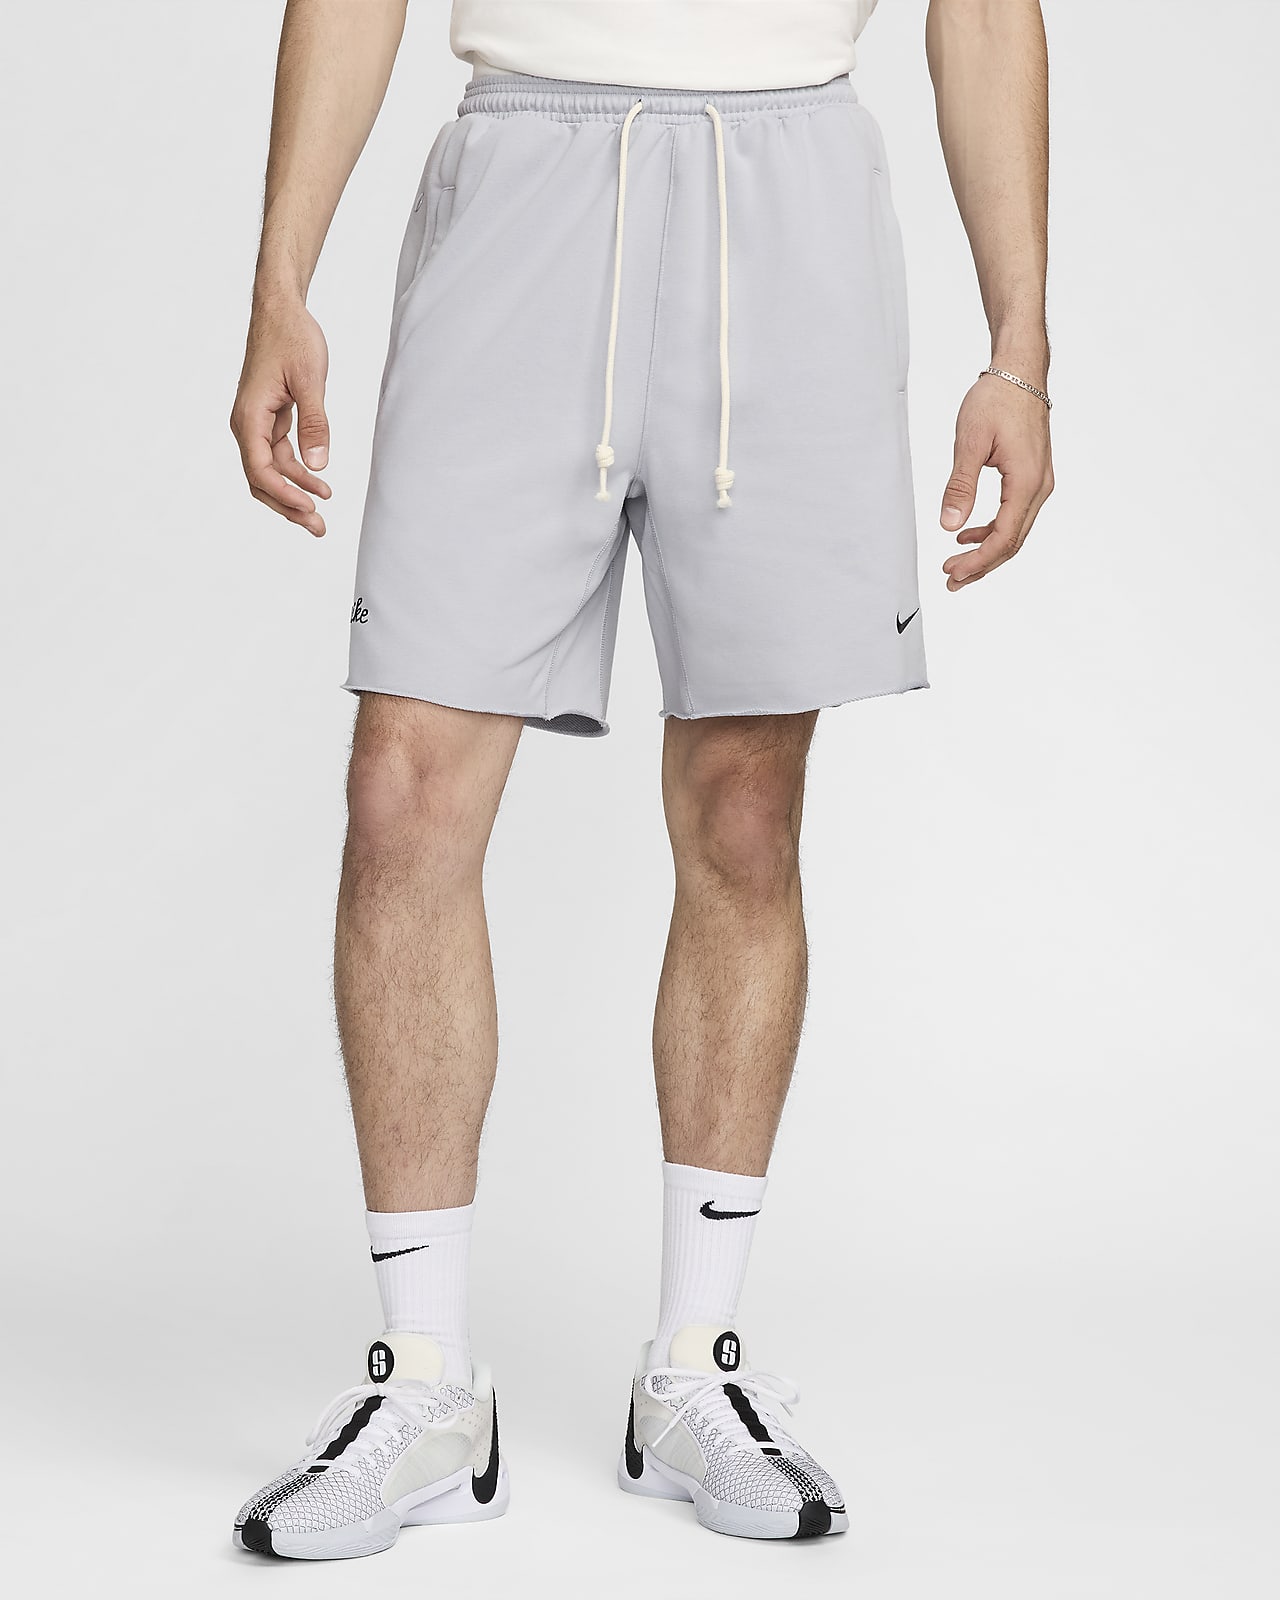 Pánské 20cm basketbalové kraťasy Nike Standard Issue Dri-FIT